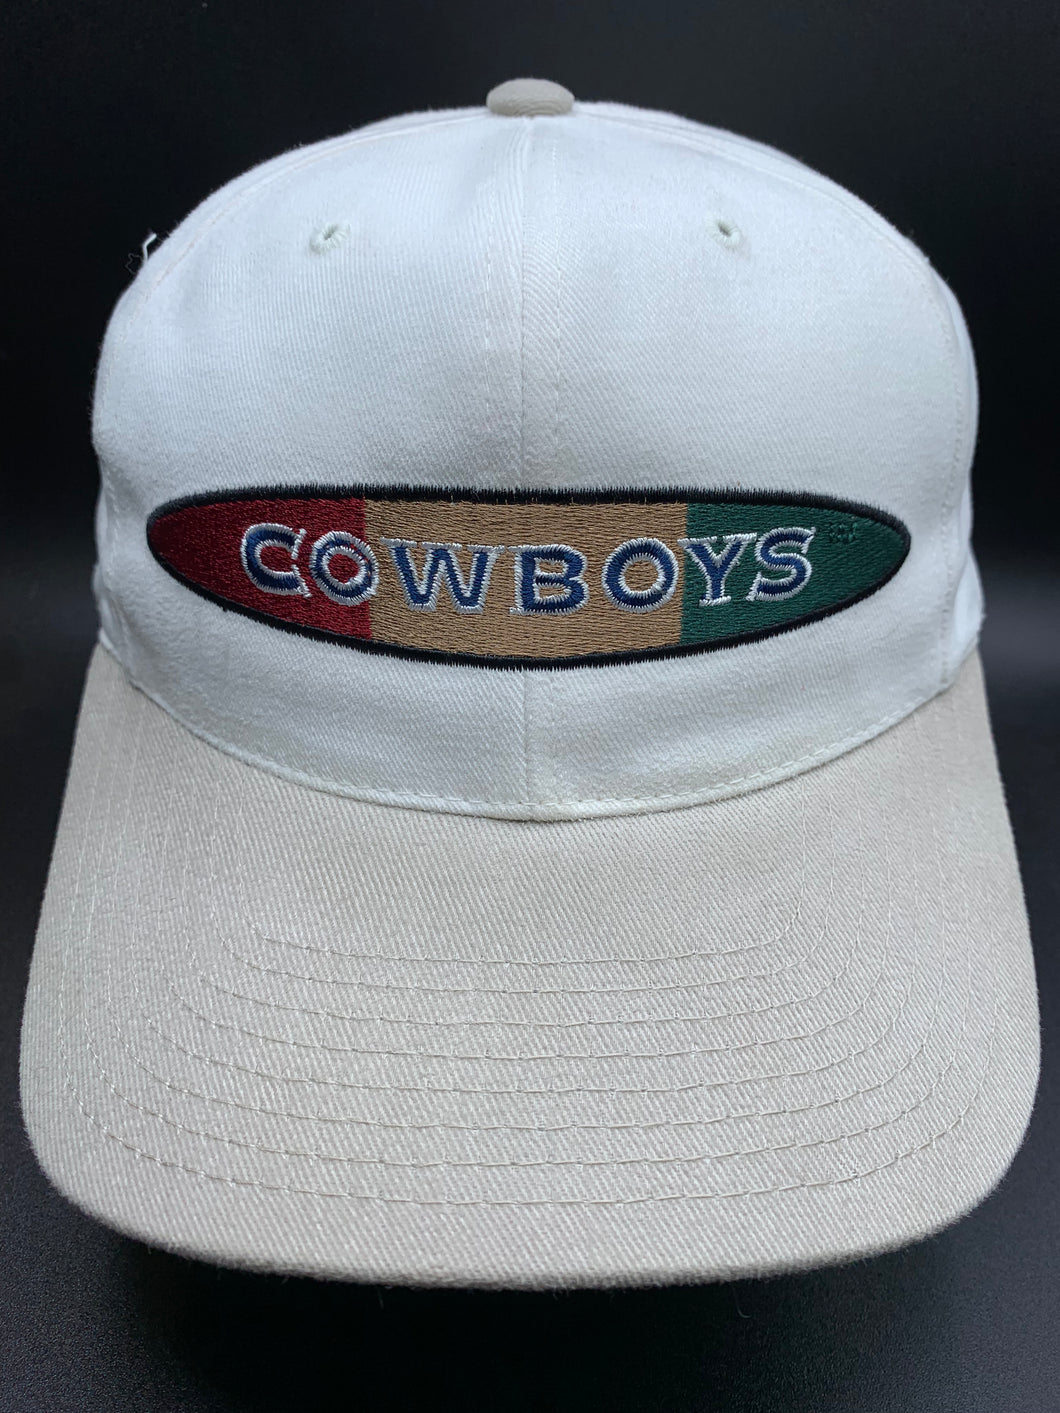 Vintage Dallas Cowboys Snapback Hat